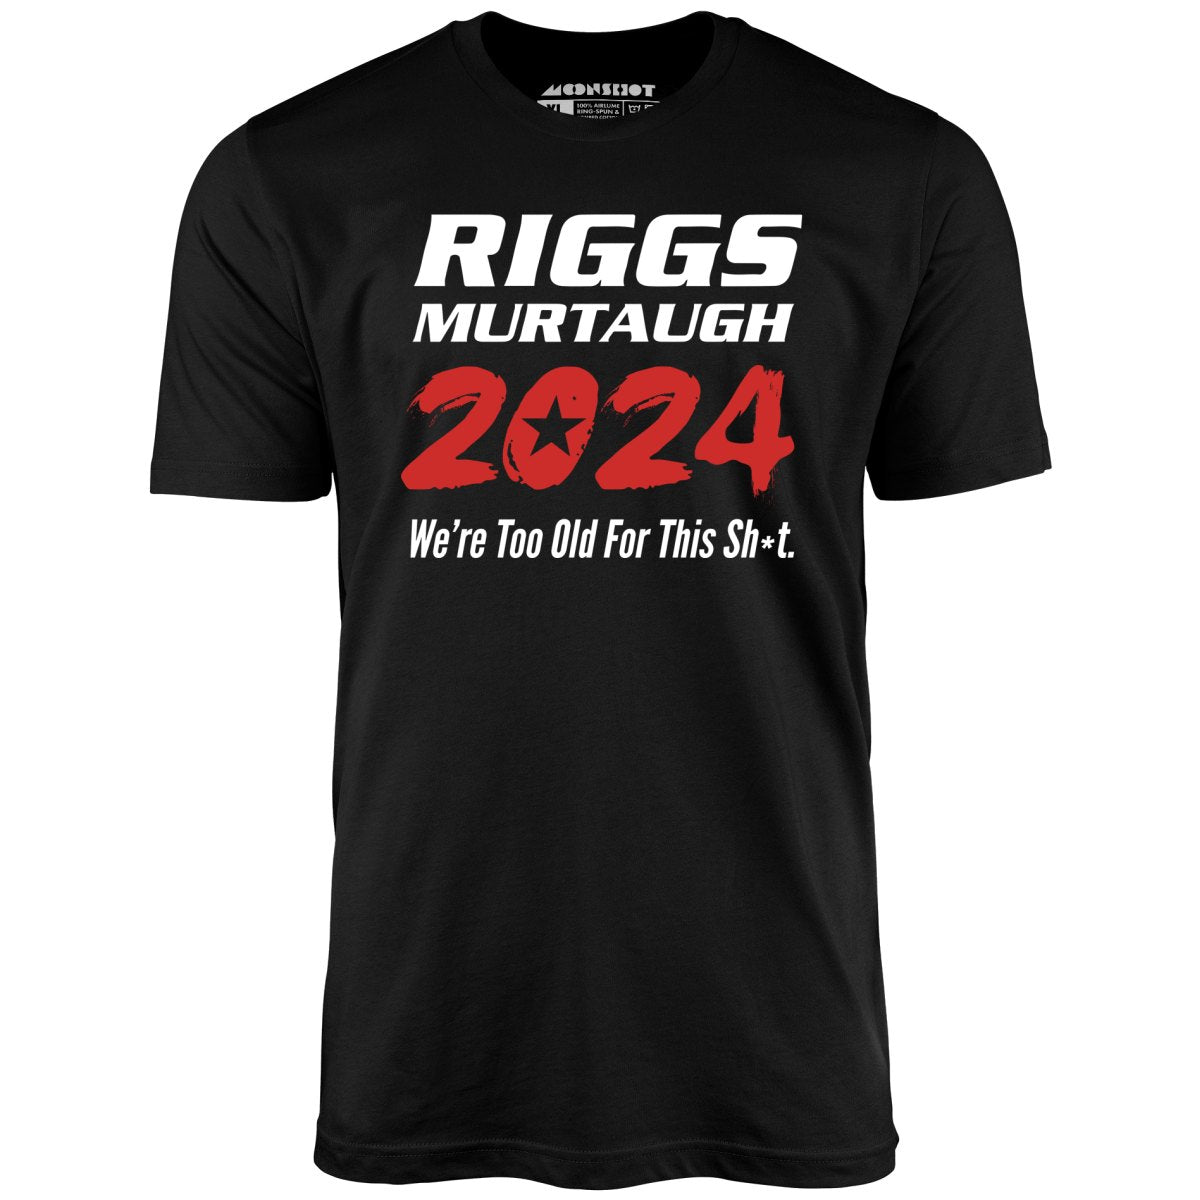 Riggs Murtaugh 2024 - Unisex T-Shirt